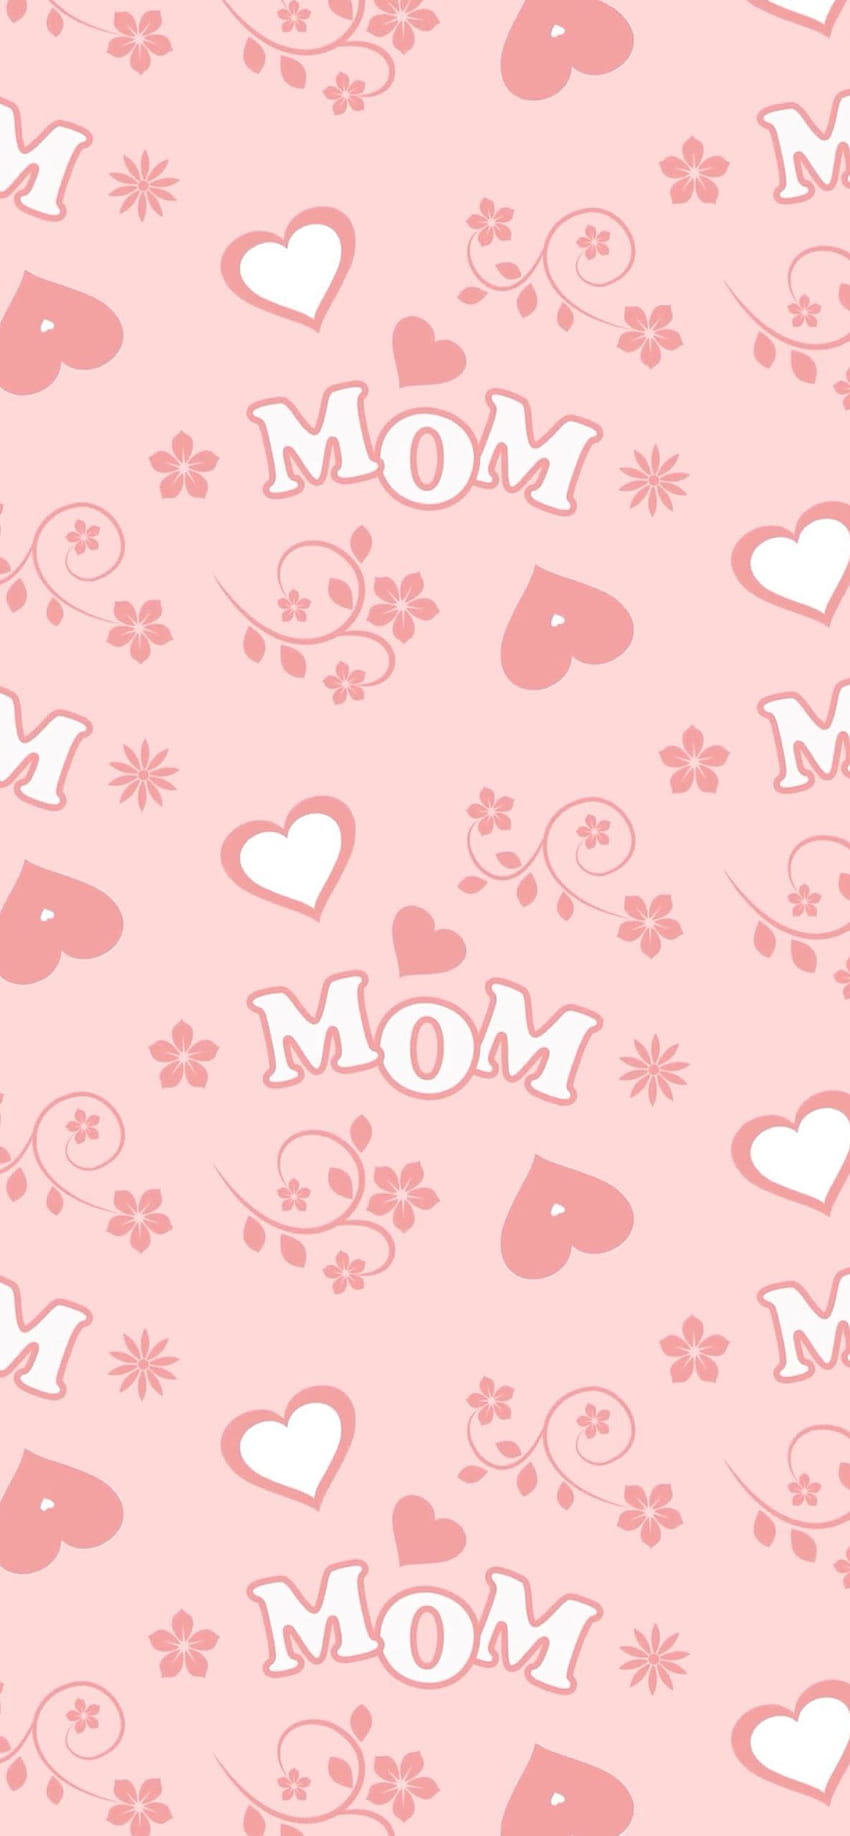 Festa della Mamma, mom's day, for moms HD phone wallpaper